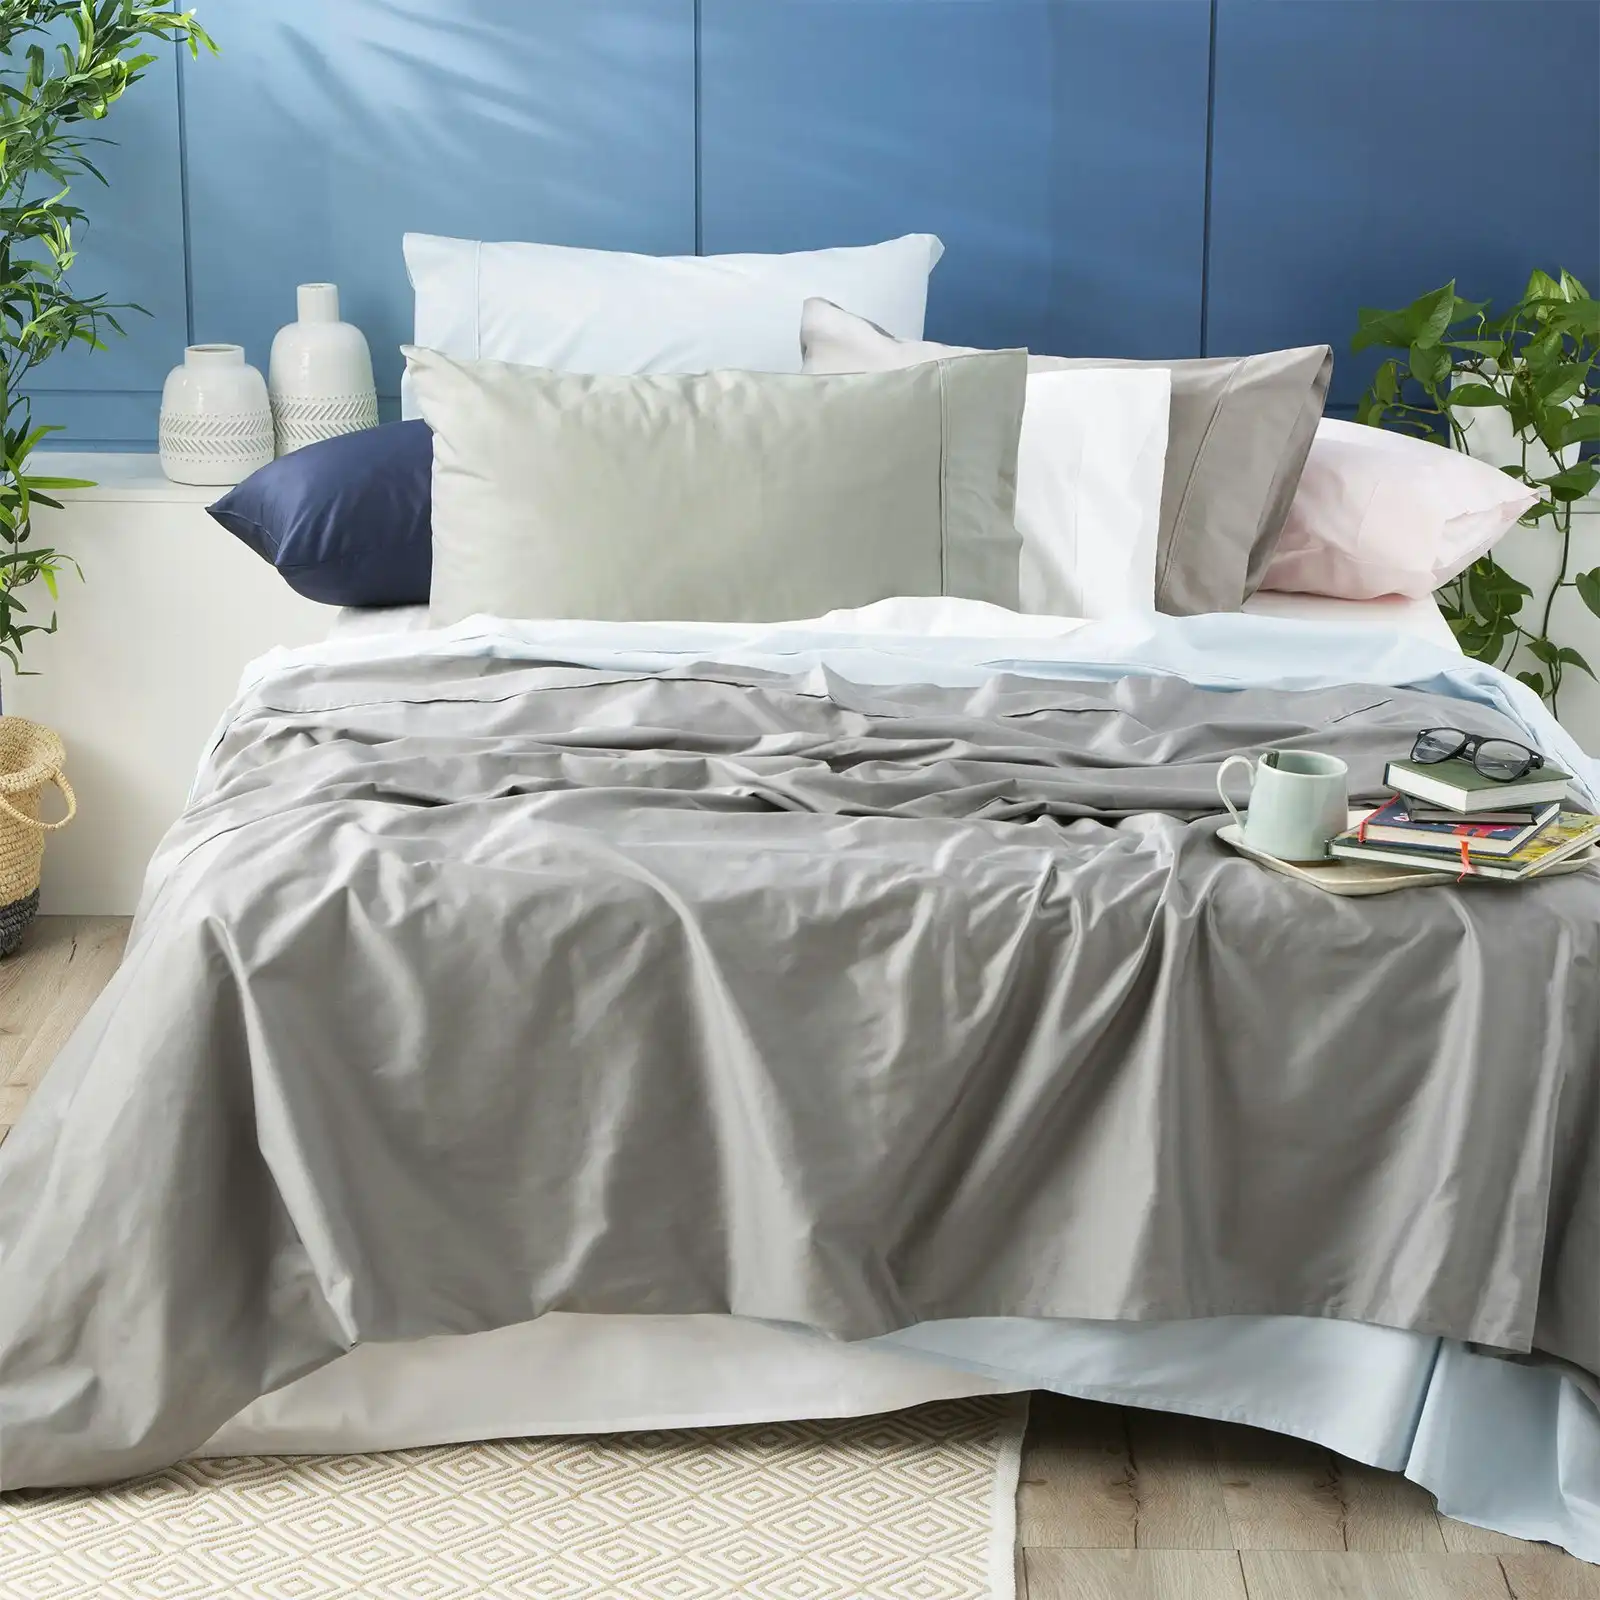 Park Avenue Mega Queen Sheet/Pillowcases 500TC Bamboo Cotton Home Bedding White